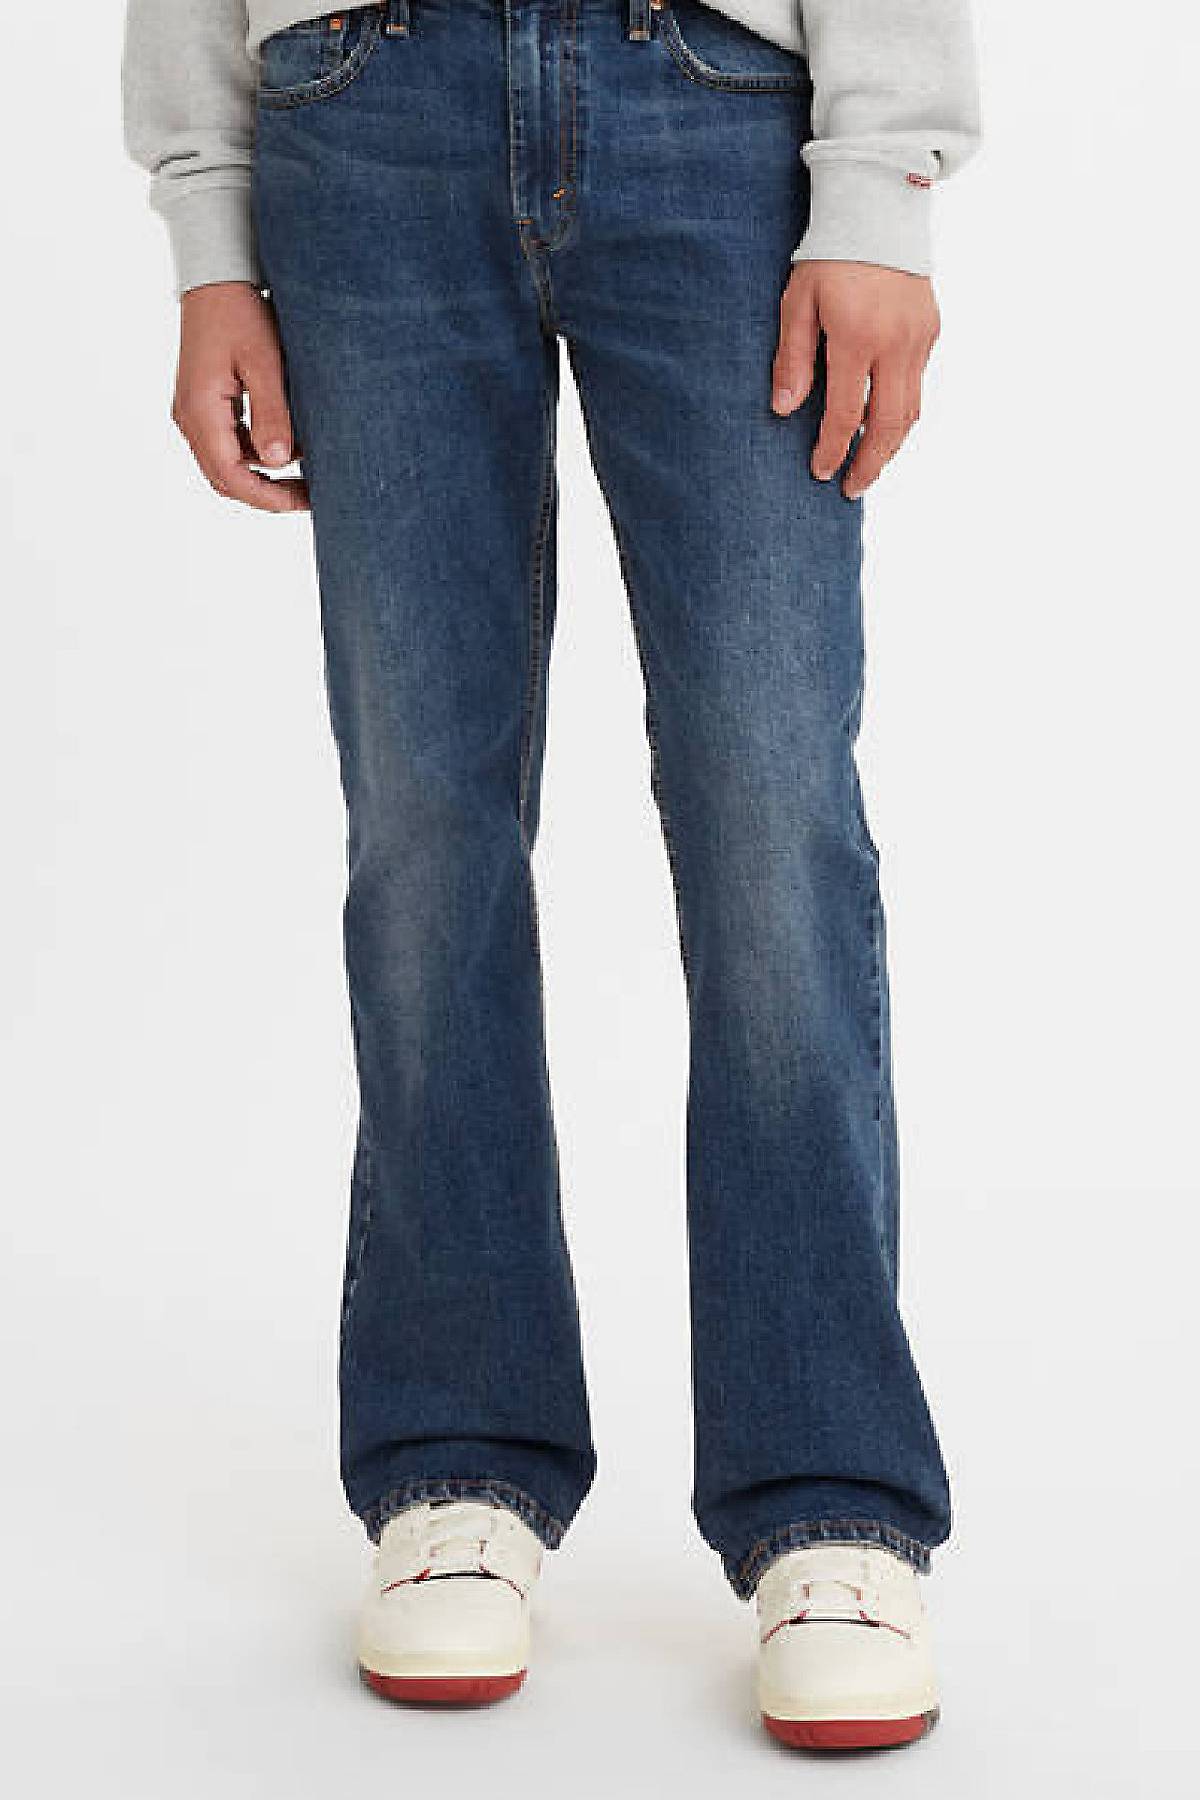 Model wearing 527™ Slim Bootcut jeans